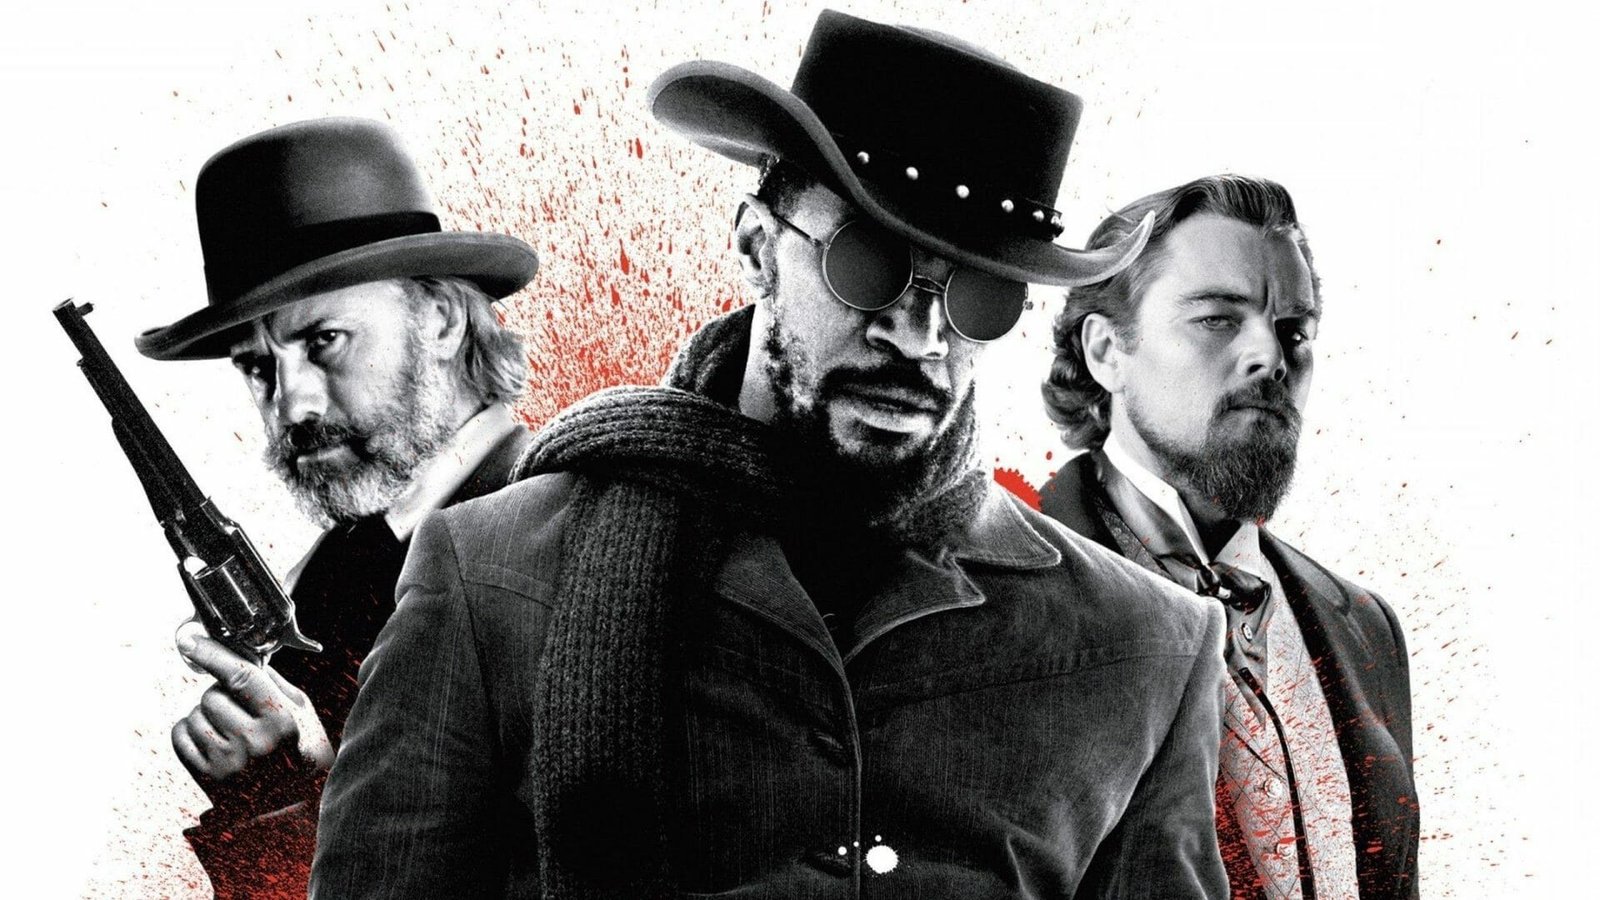 Action Movies on Netflix: Django Unchained